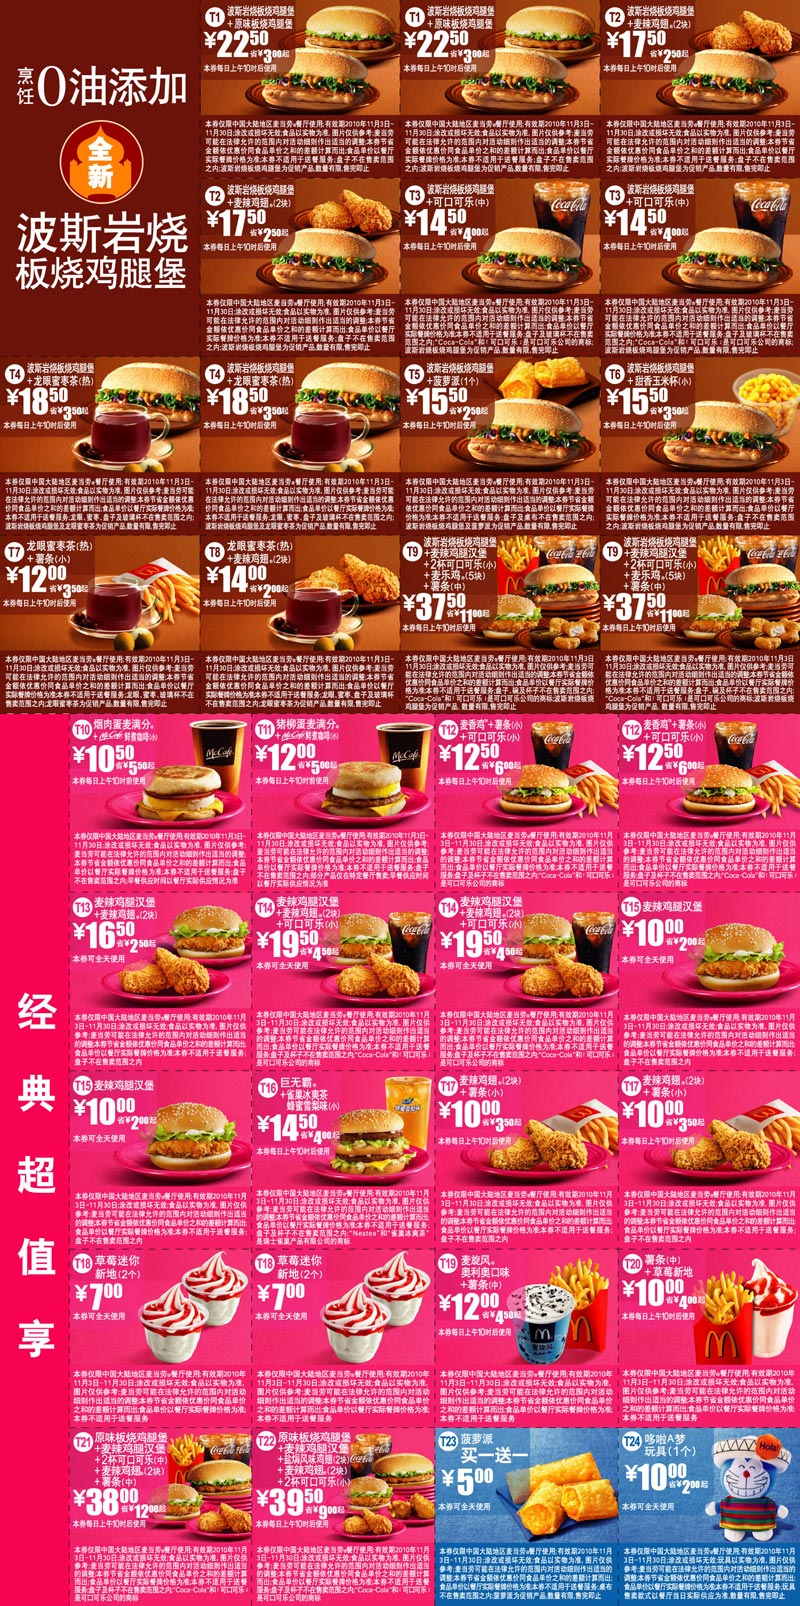 麦当劳电子优惠券2010年11月整张打印版本,所有优惠券打印于1张A4纸 有效期至：2010年11月30日 www.5ikfc.com